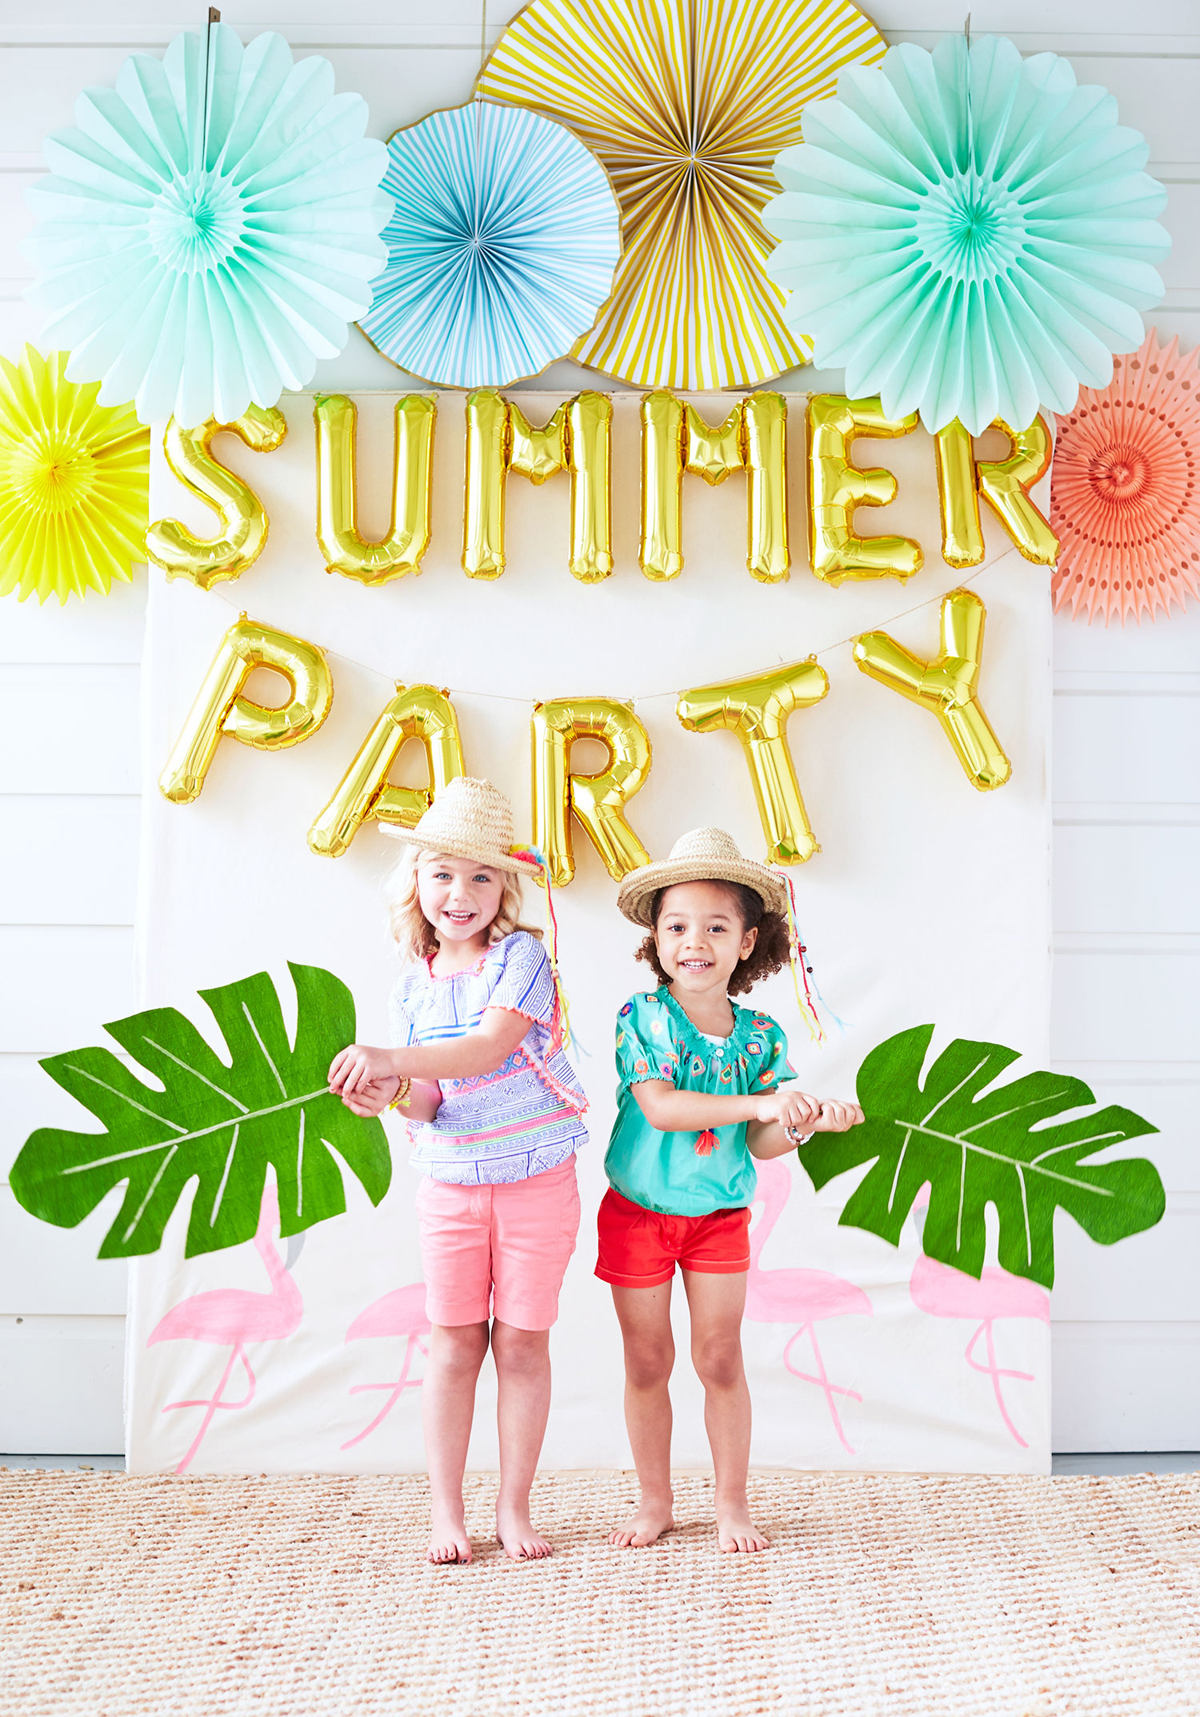 Arriesgado Excelente cuenco 10 ideas para fiestas de verano – El Blog de This Is Kool